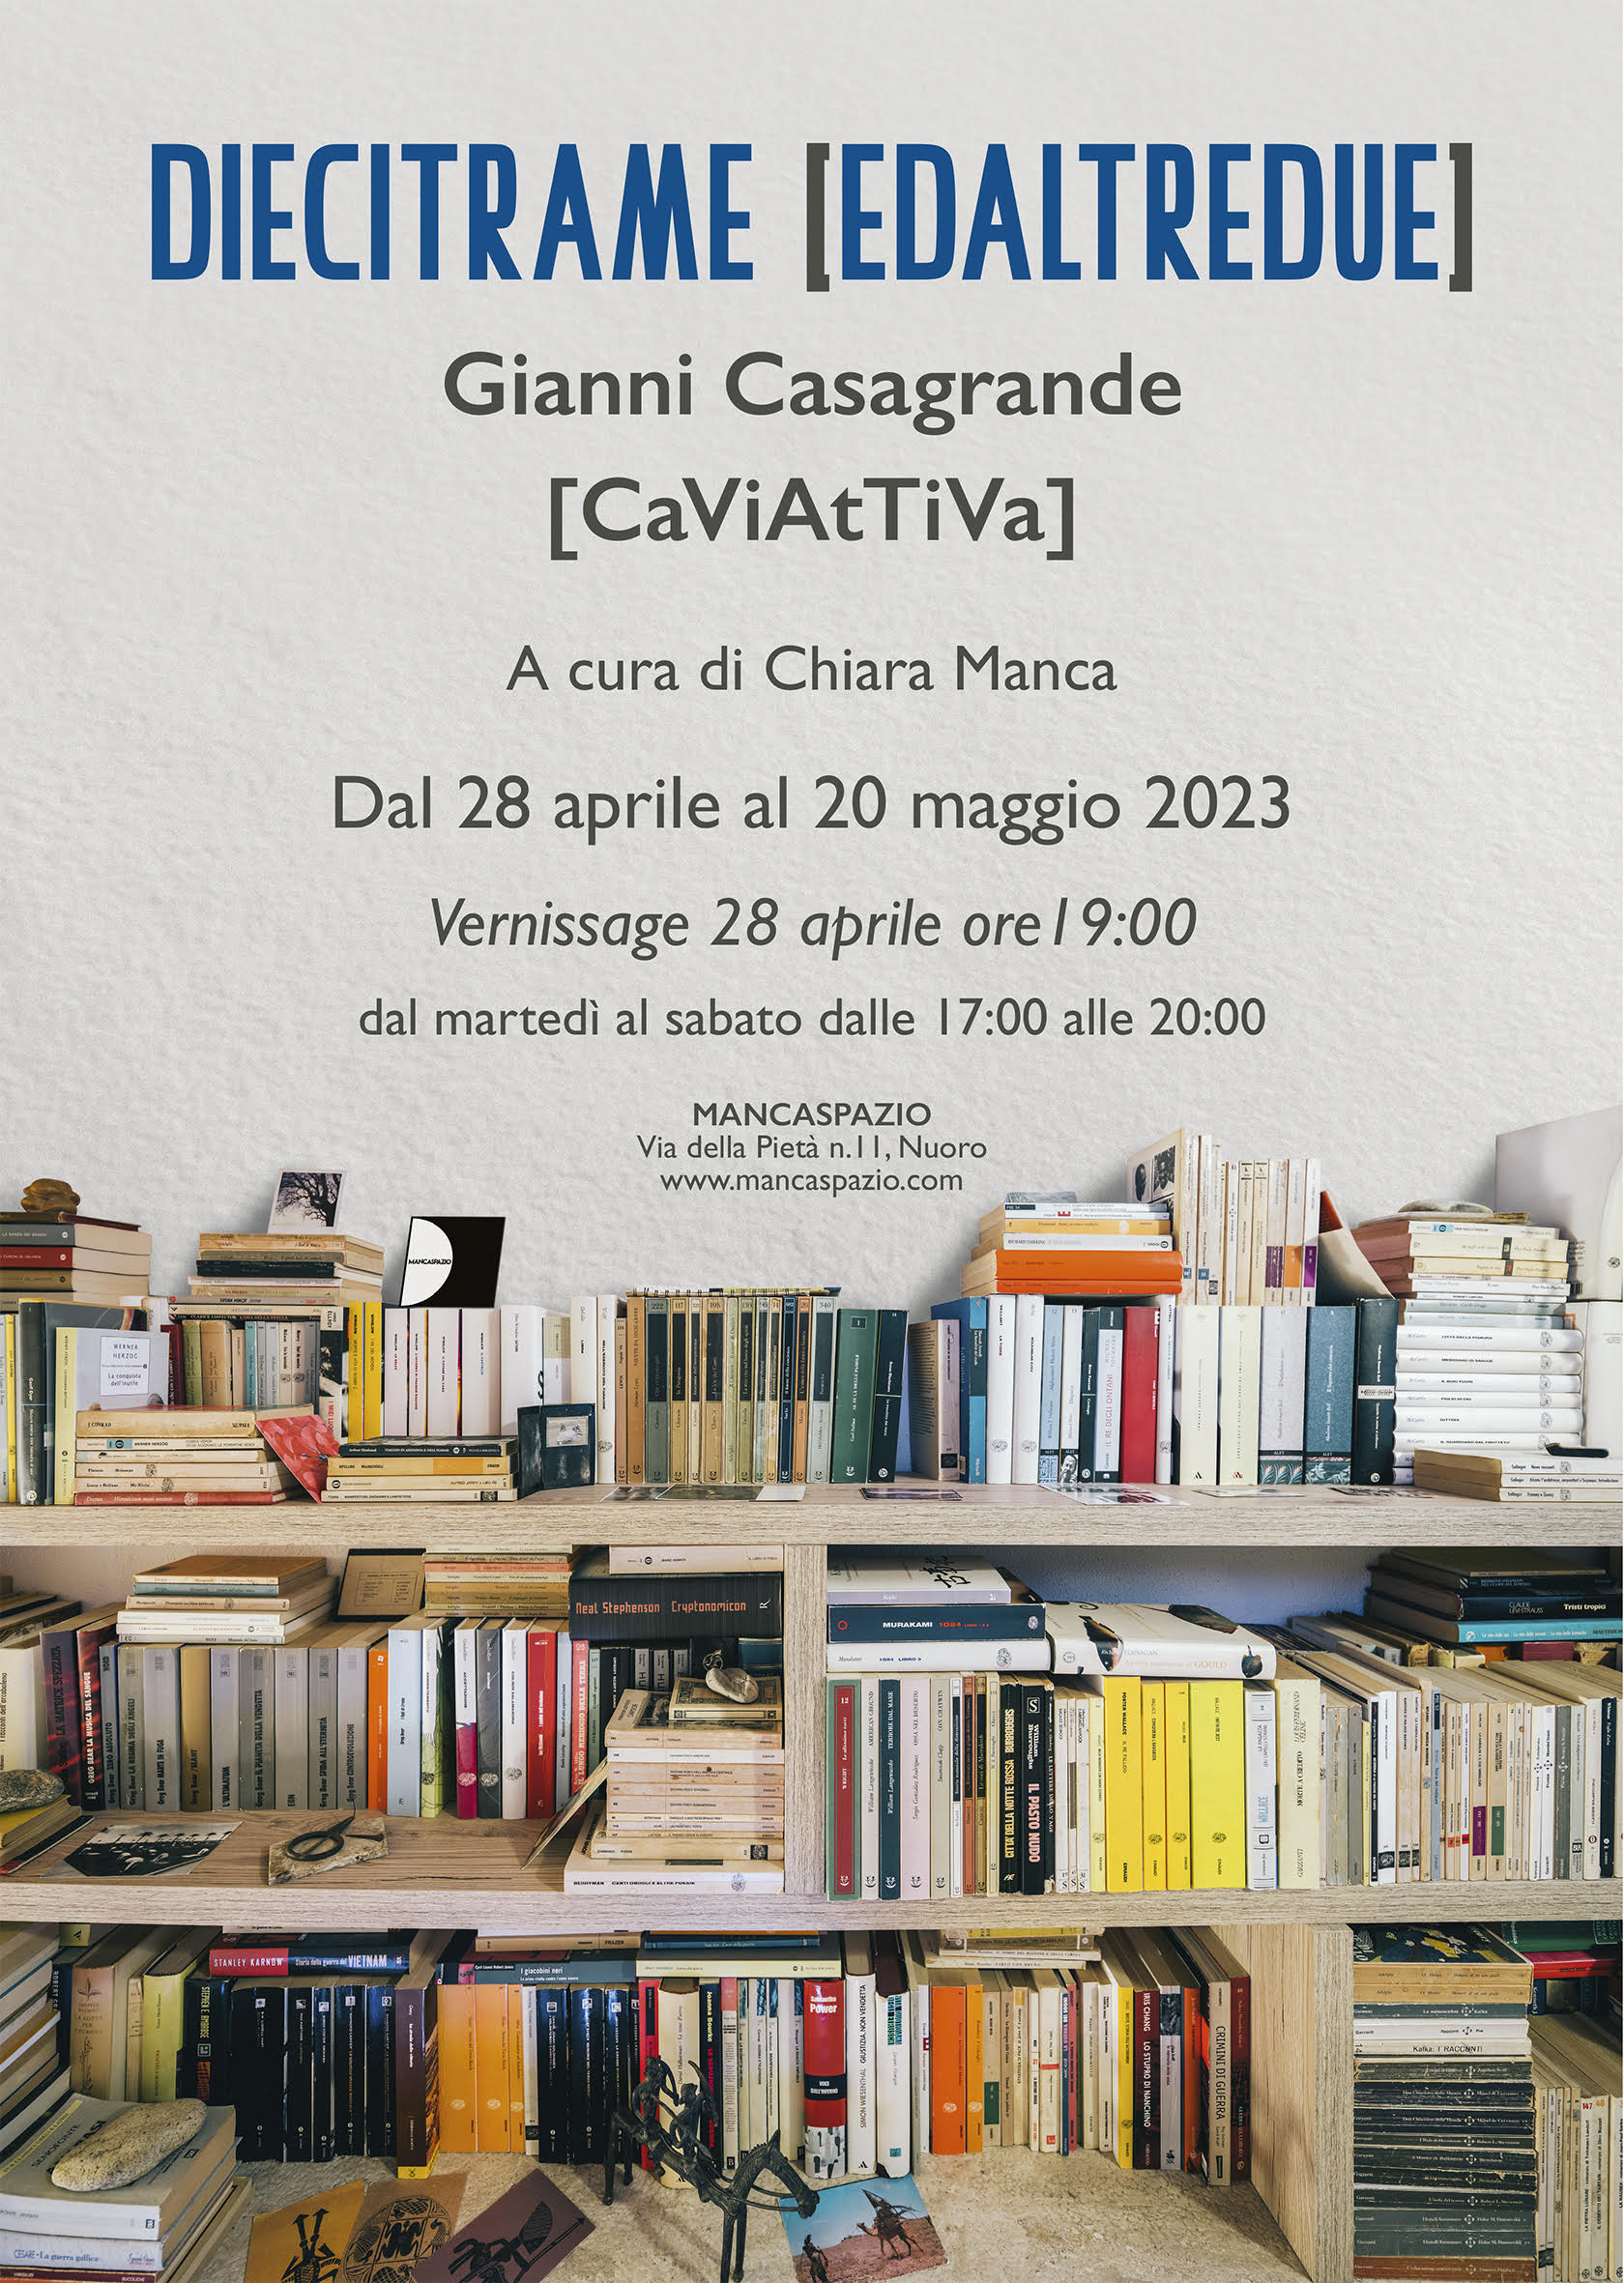 Gianni Casagrande - DieciTrame [EdAltreDue]